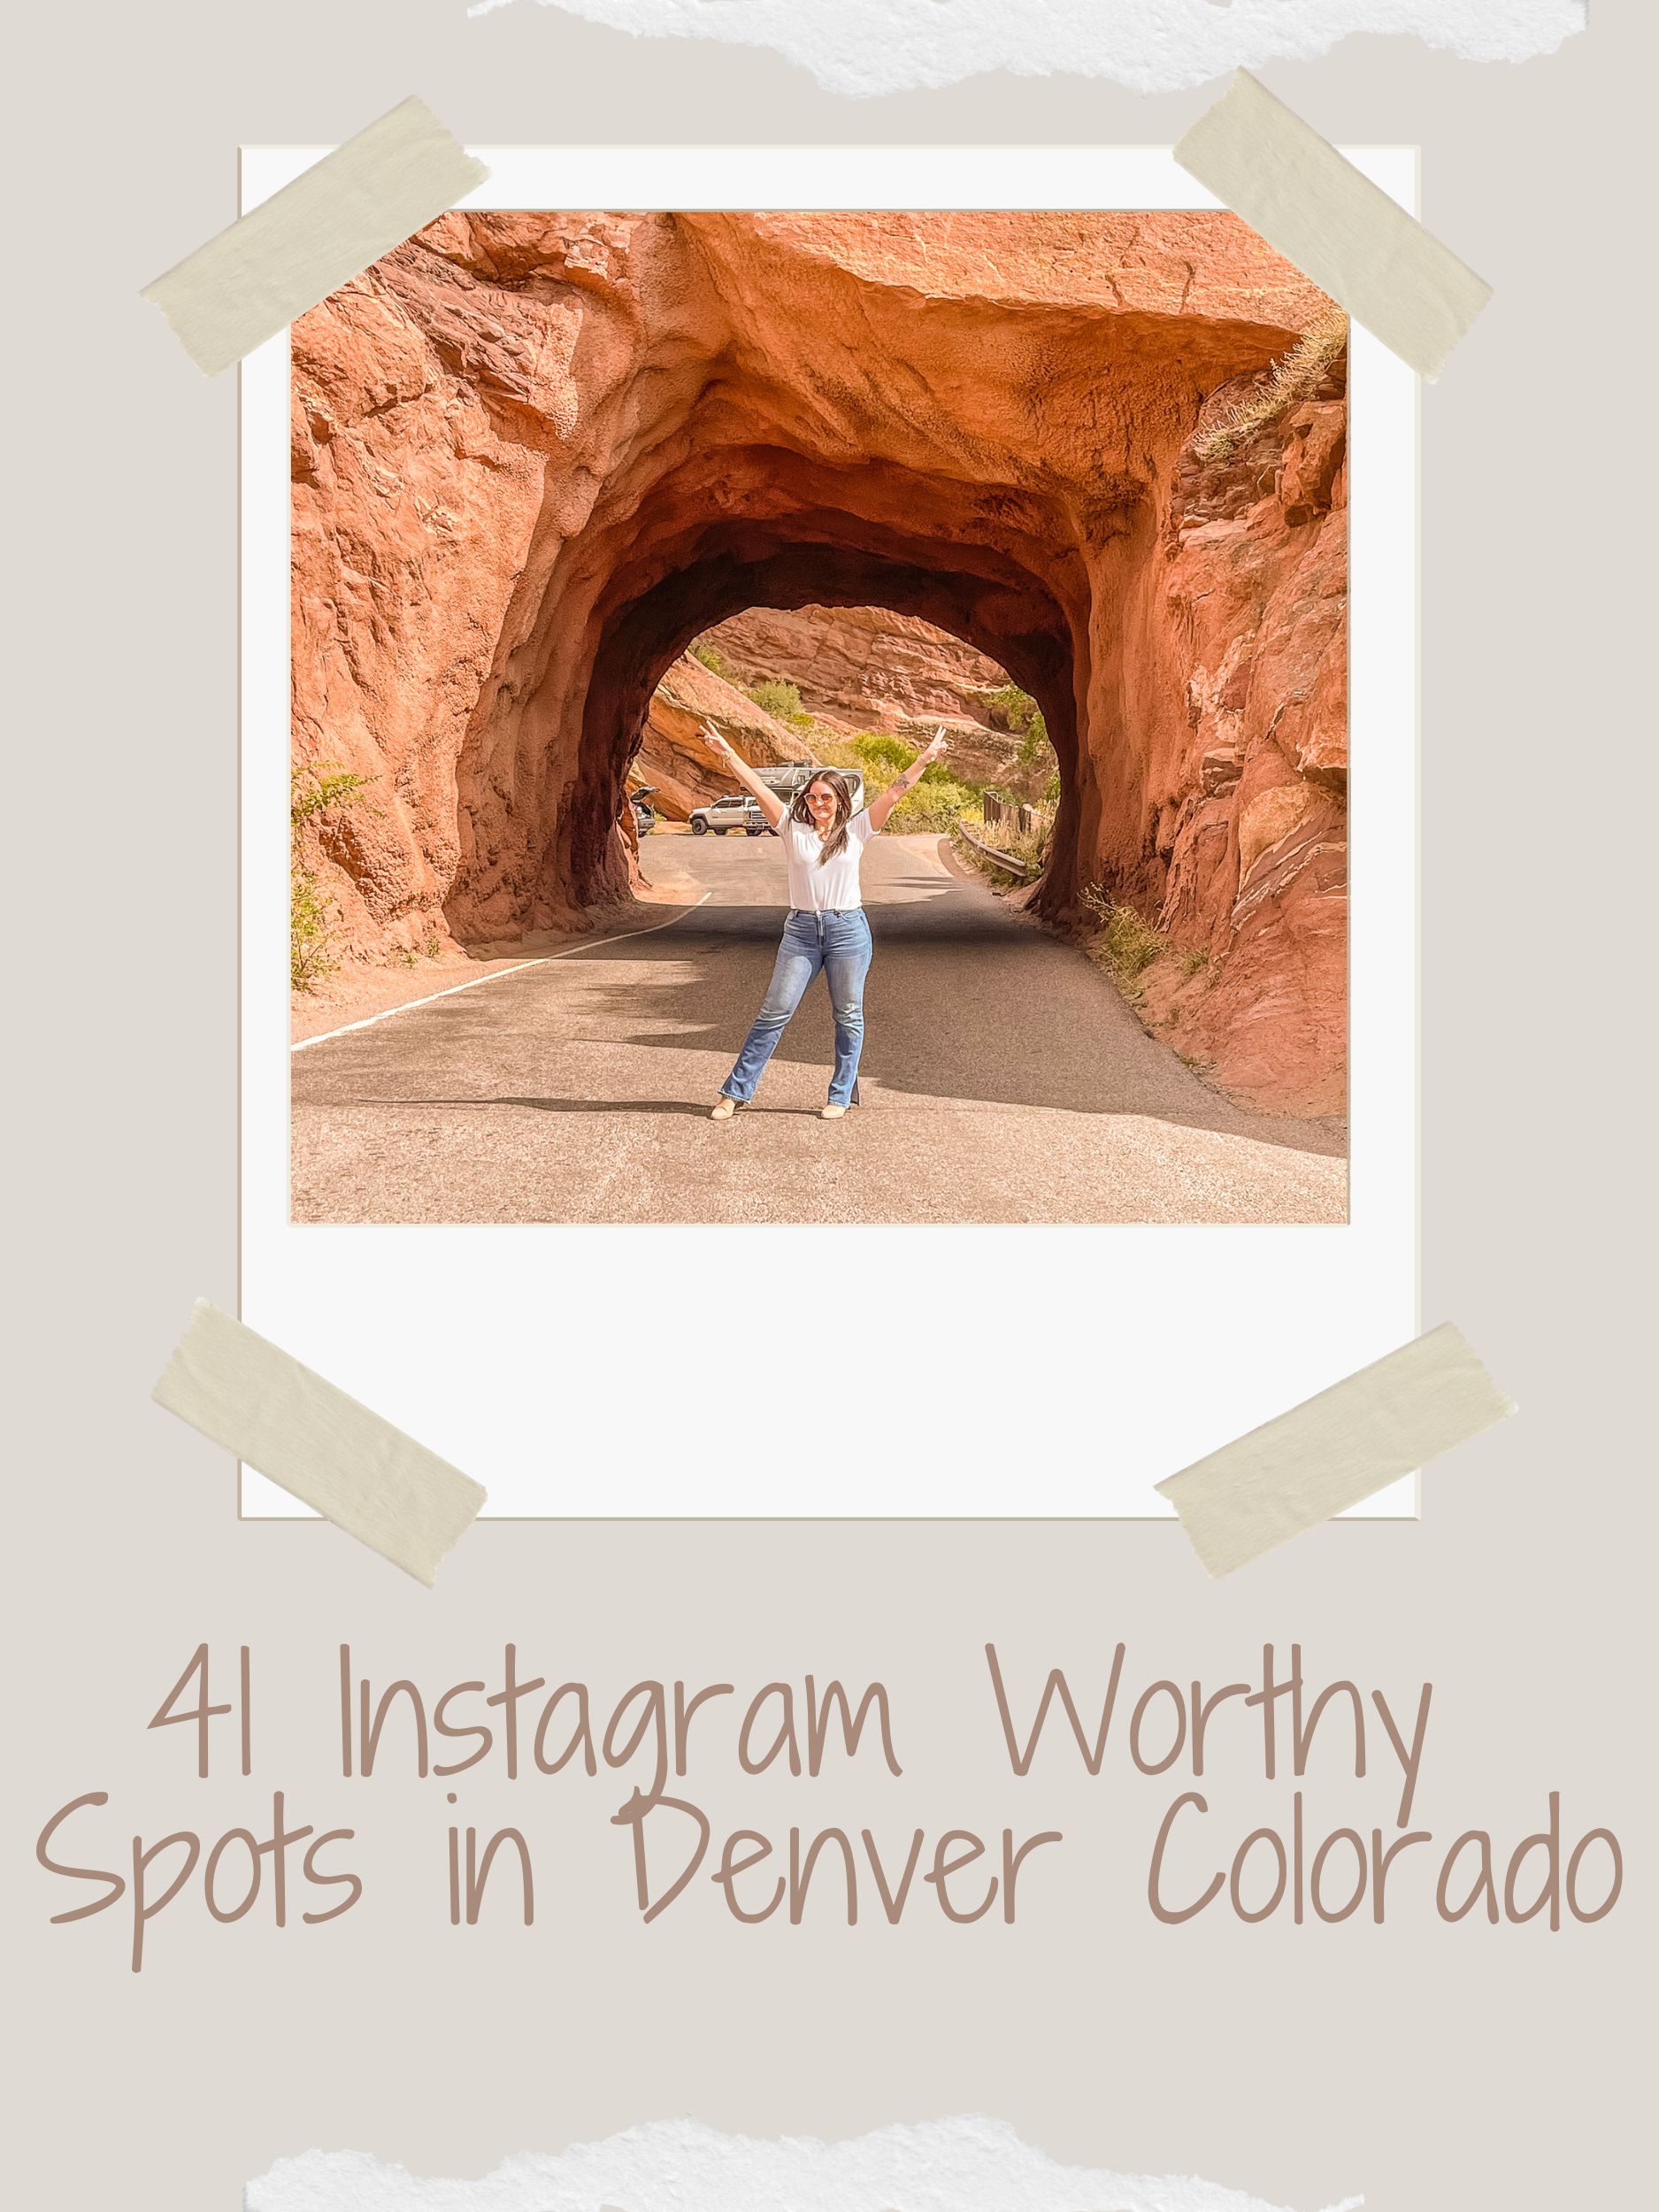 41 Instagram Worthy Spots in Denver Colorado